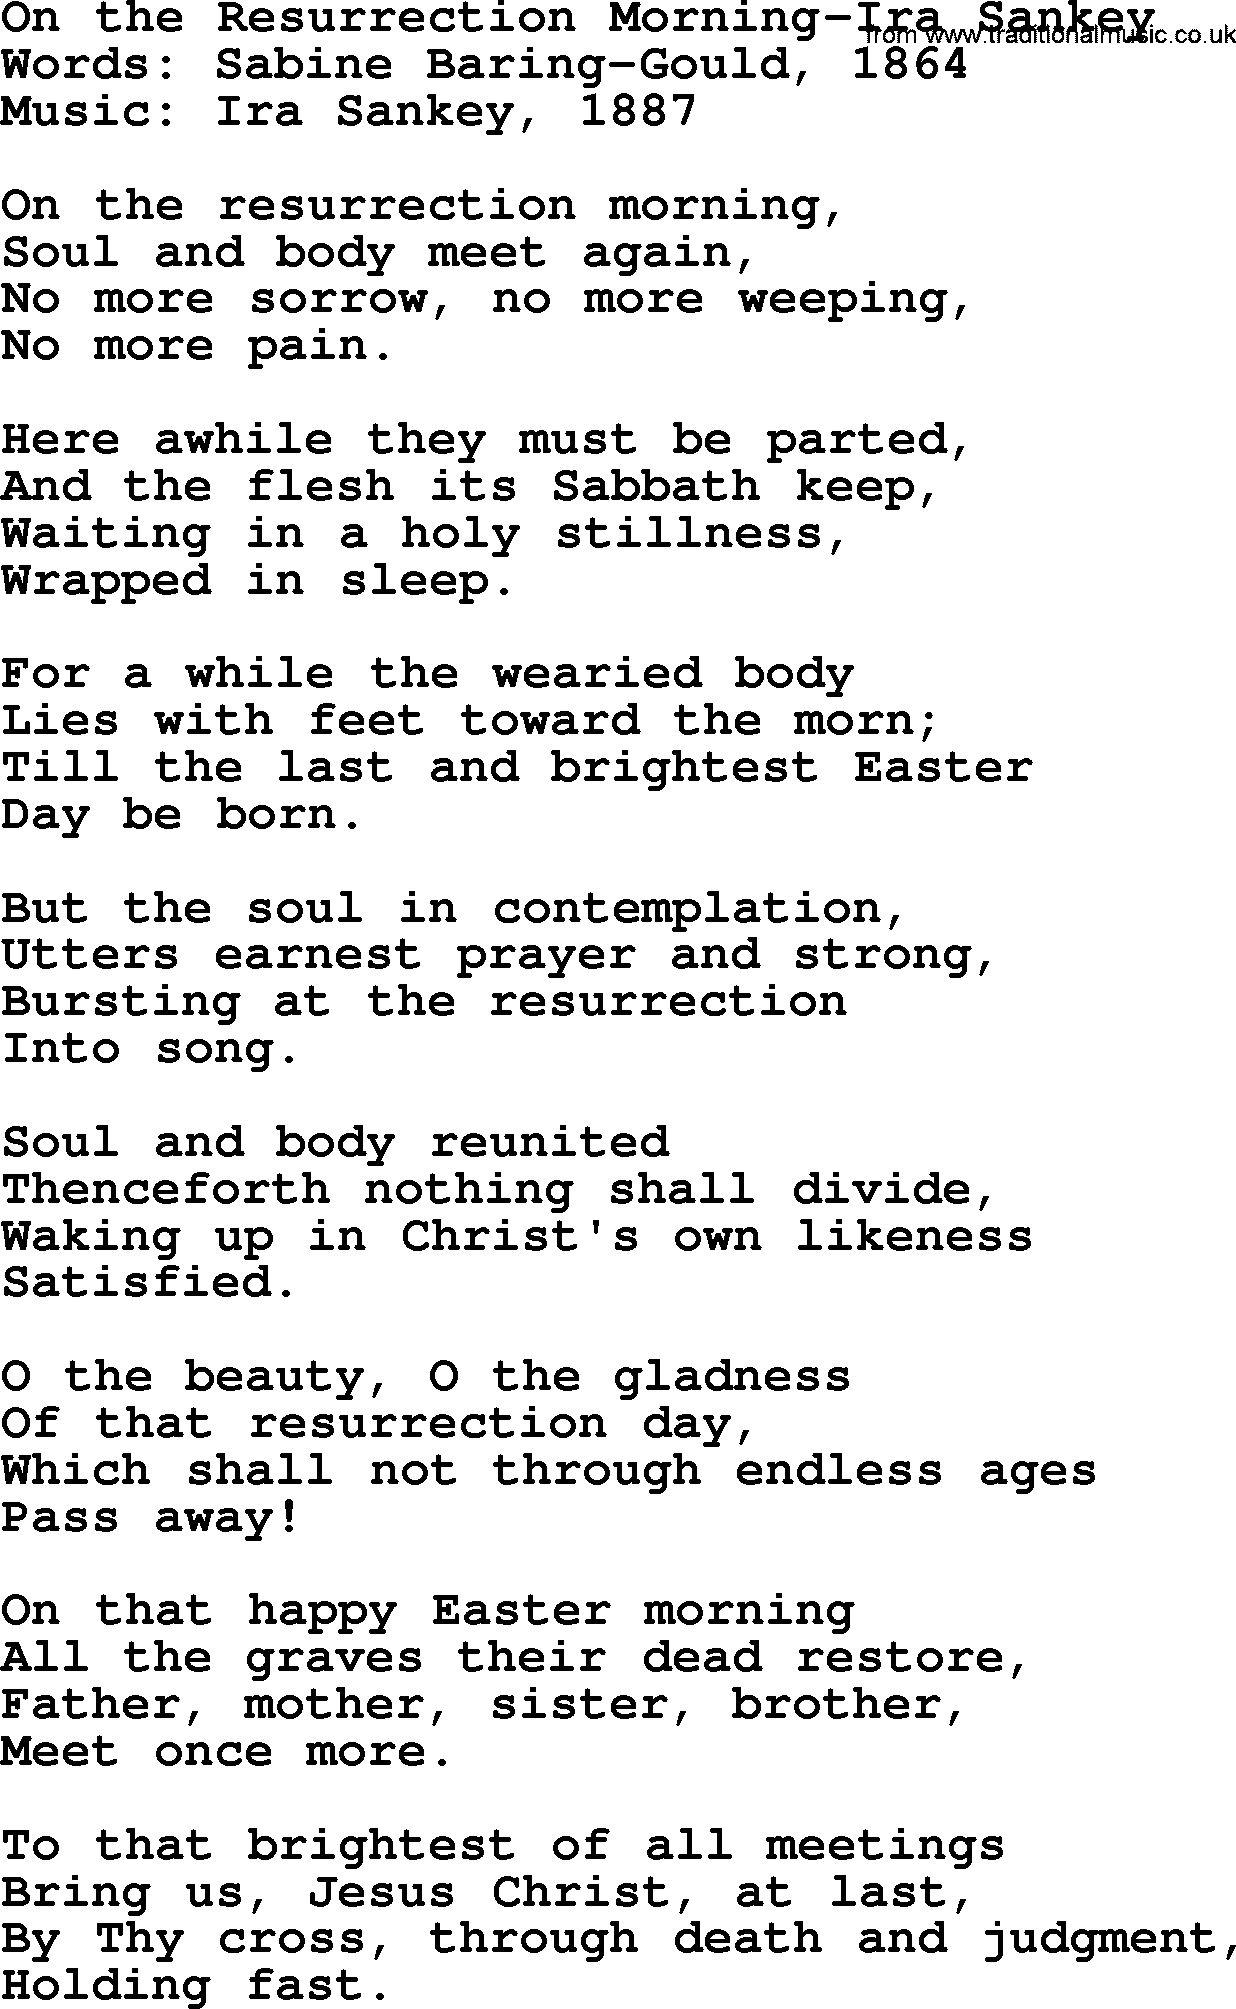 Ira Sankey hymn: On the Resurrection Morning-Ira Sankey, lyrics